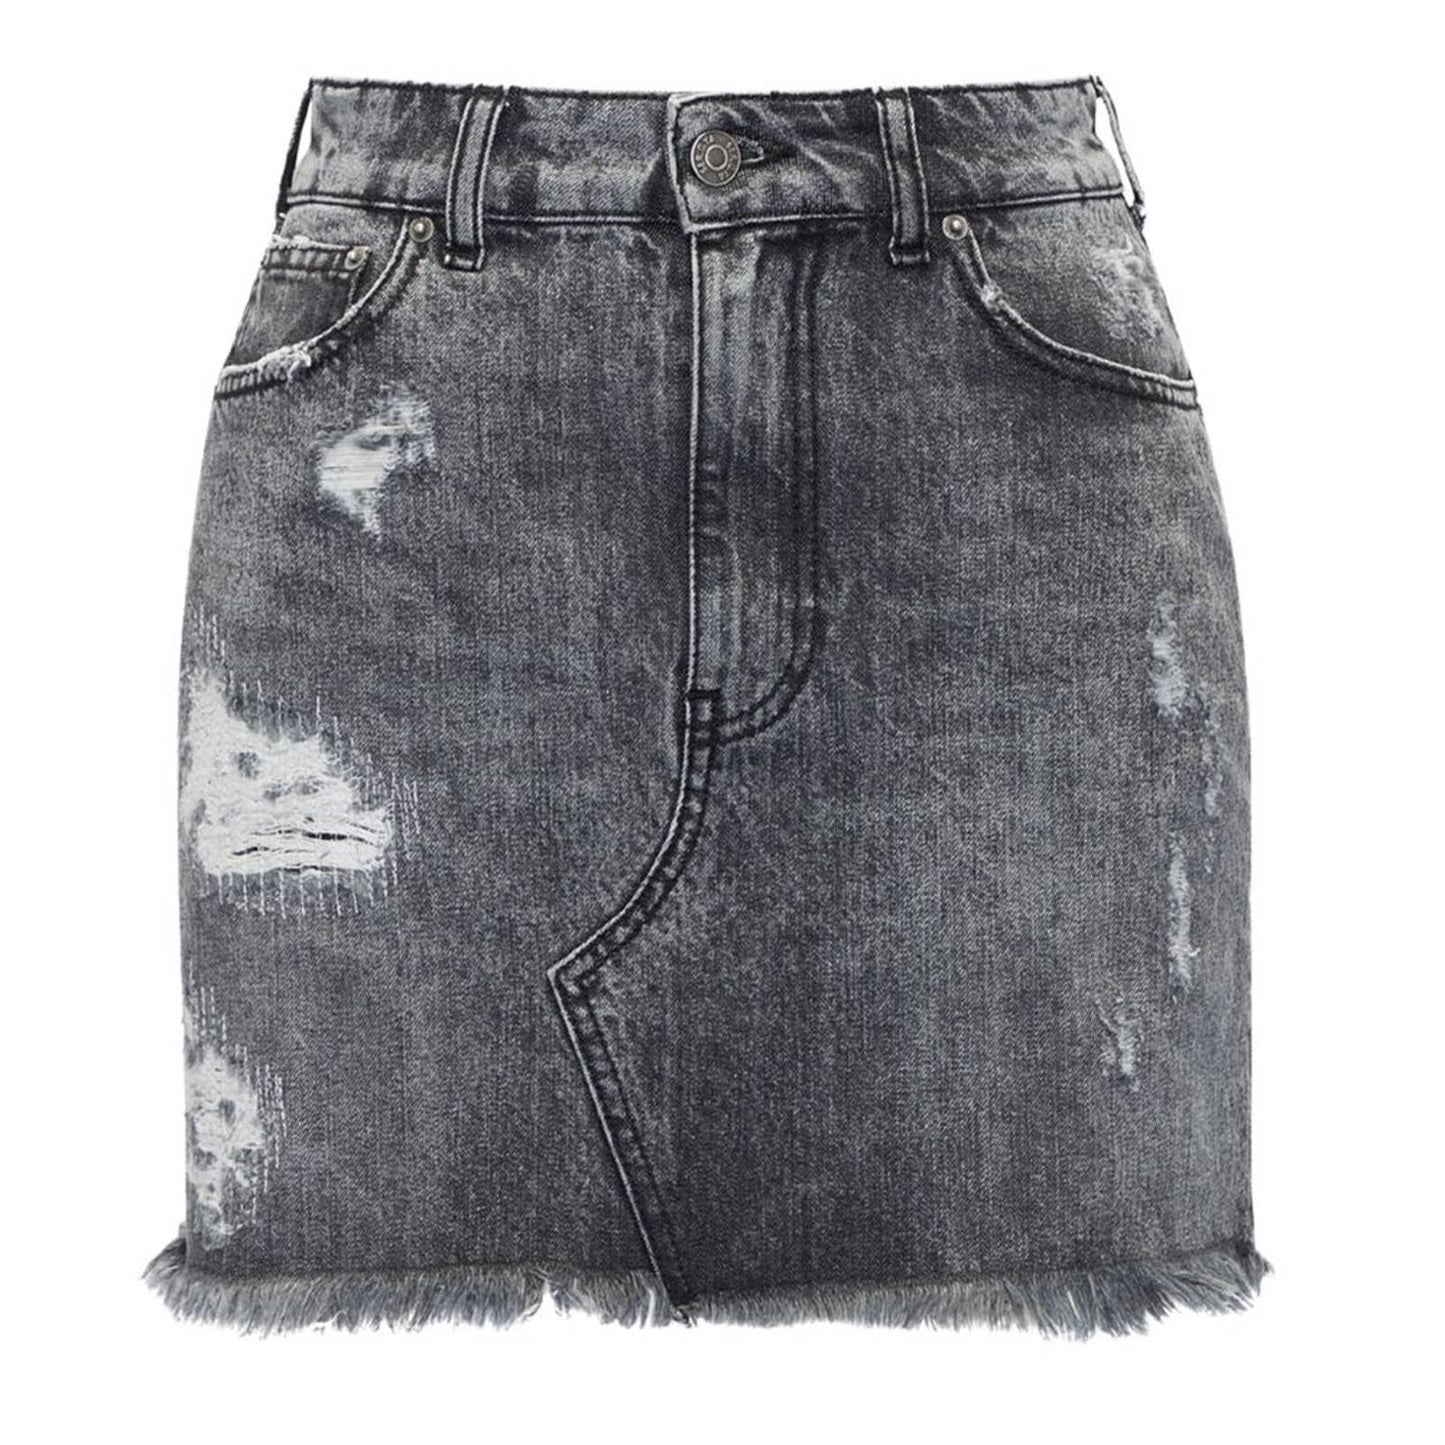 SER.O.YA Alli Mini Skirt in Phoenix Black Acid Wash NWT Size 26